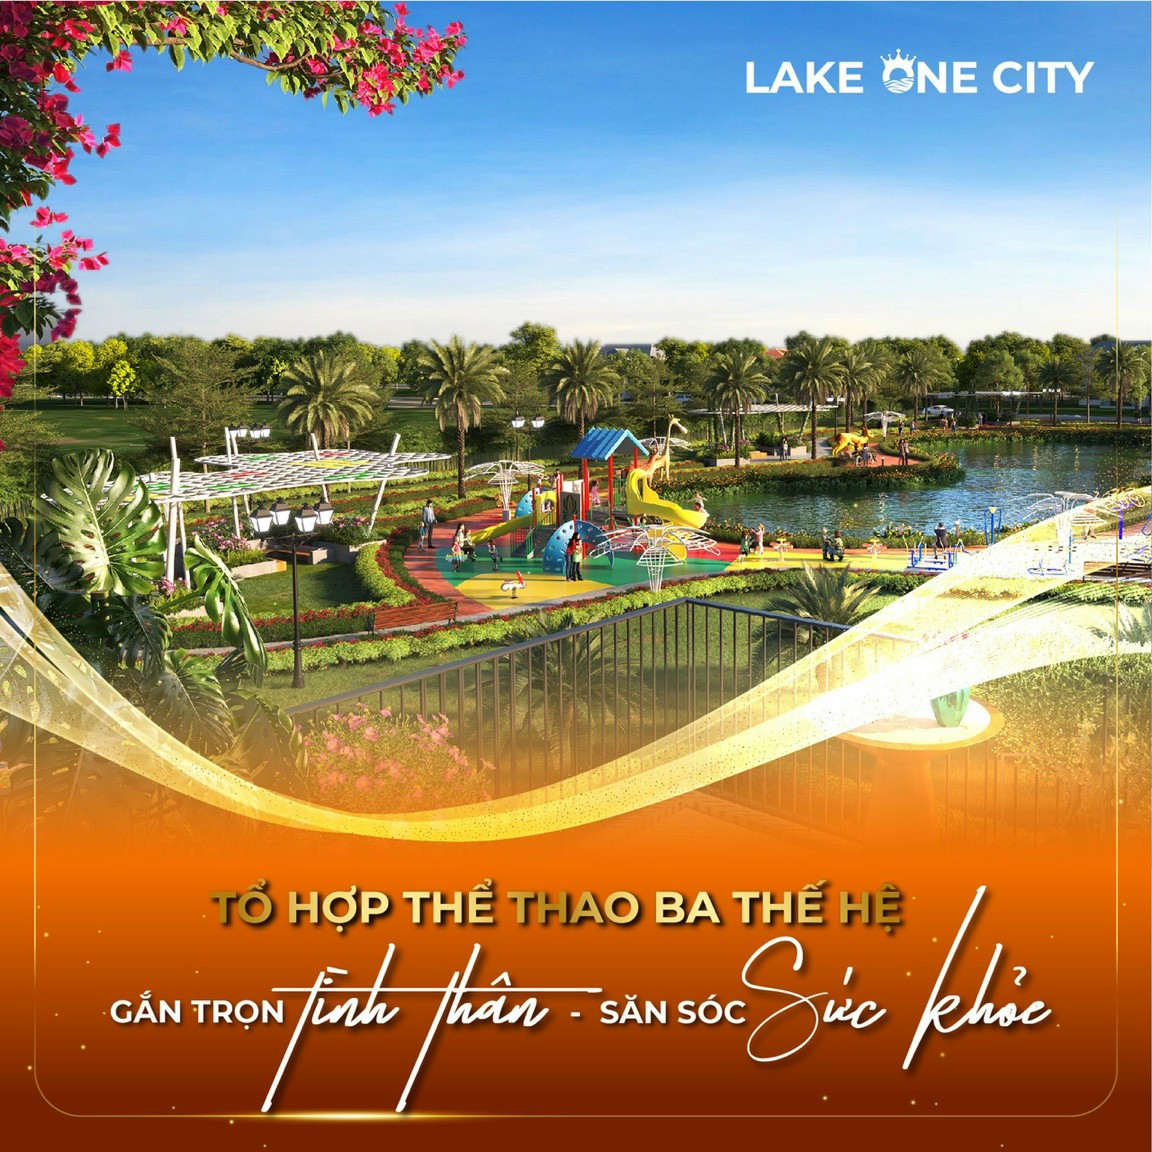 Phối cảnh Khu thể theo dự án Lake One City Bình Phước.